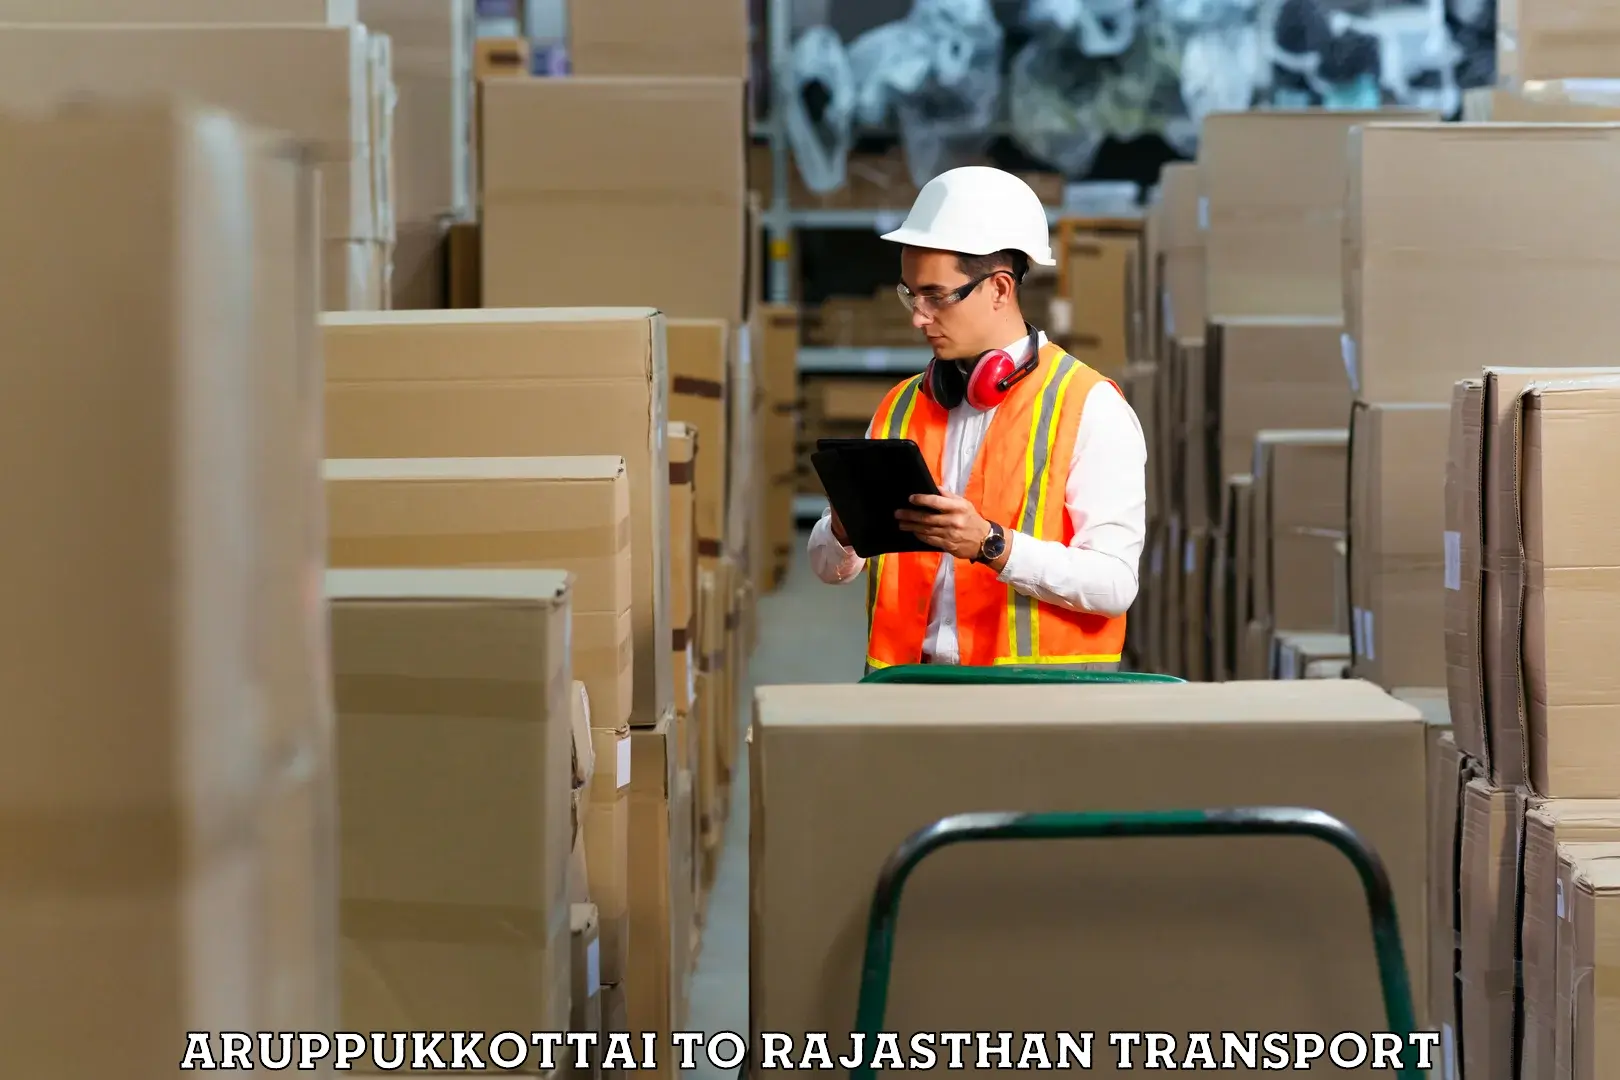 Road transport online services Aruppukkottai to Viratnagar